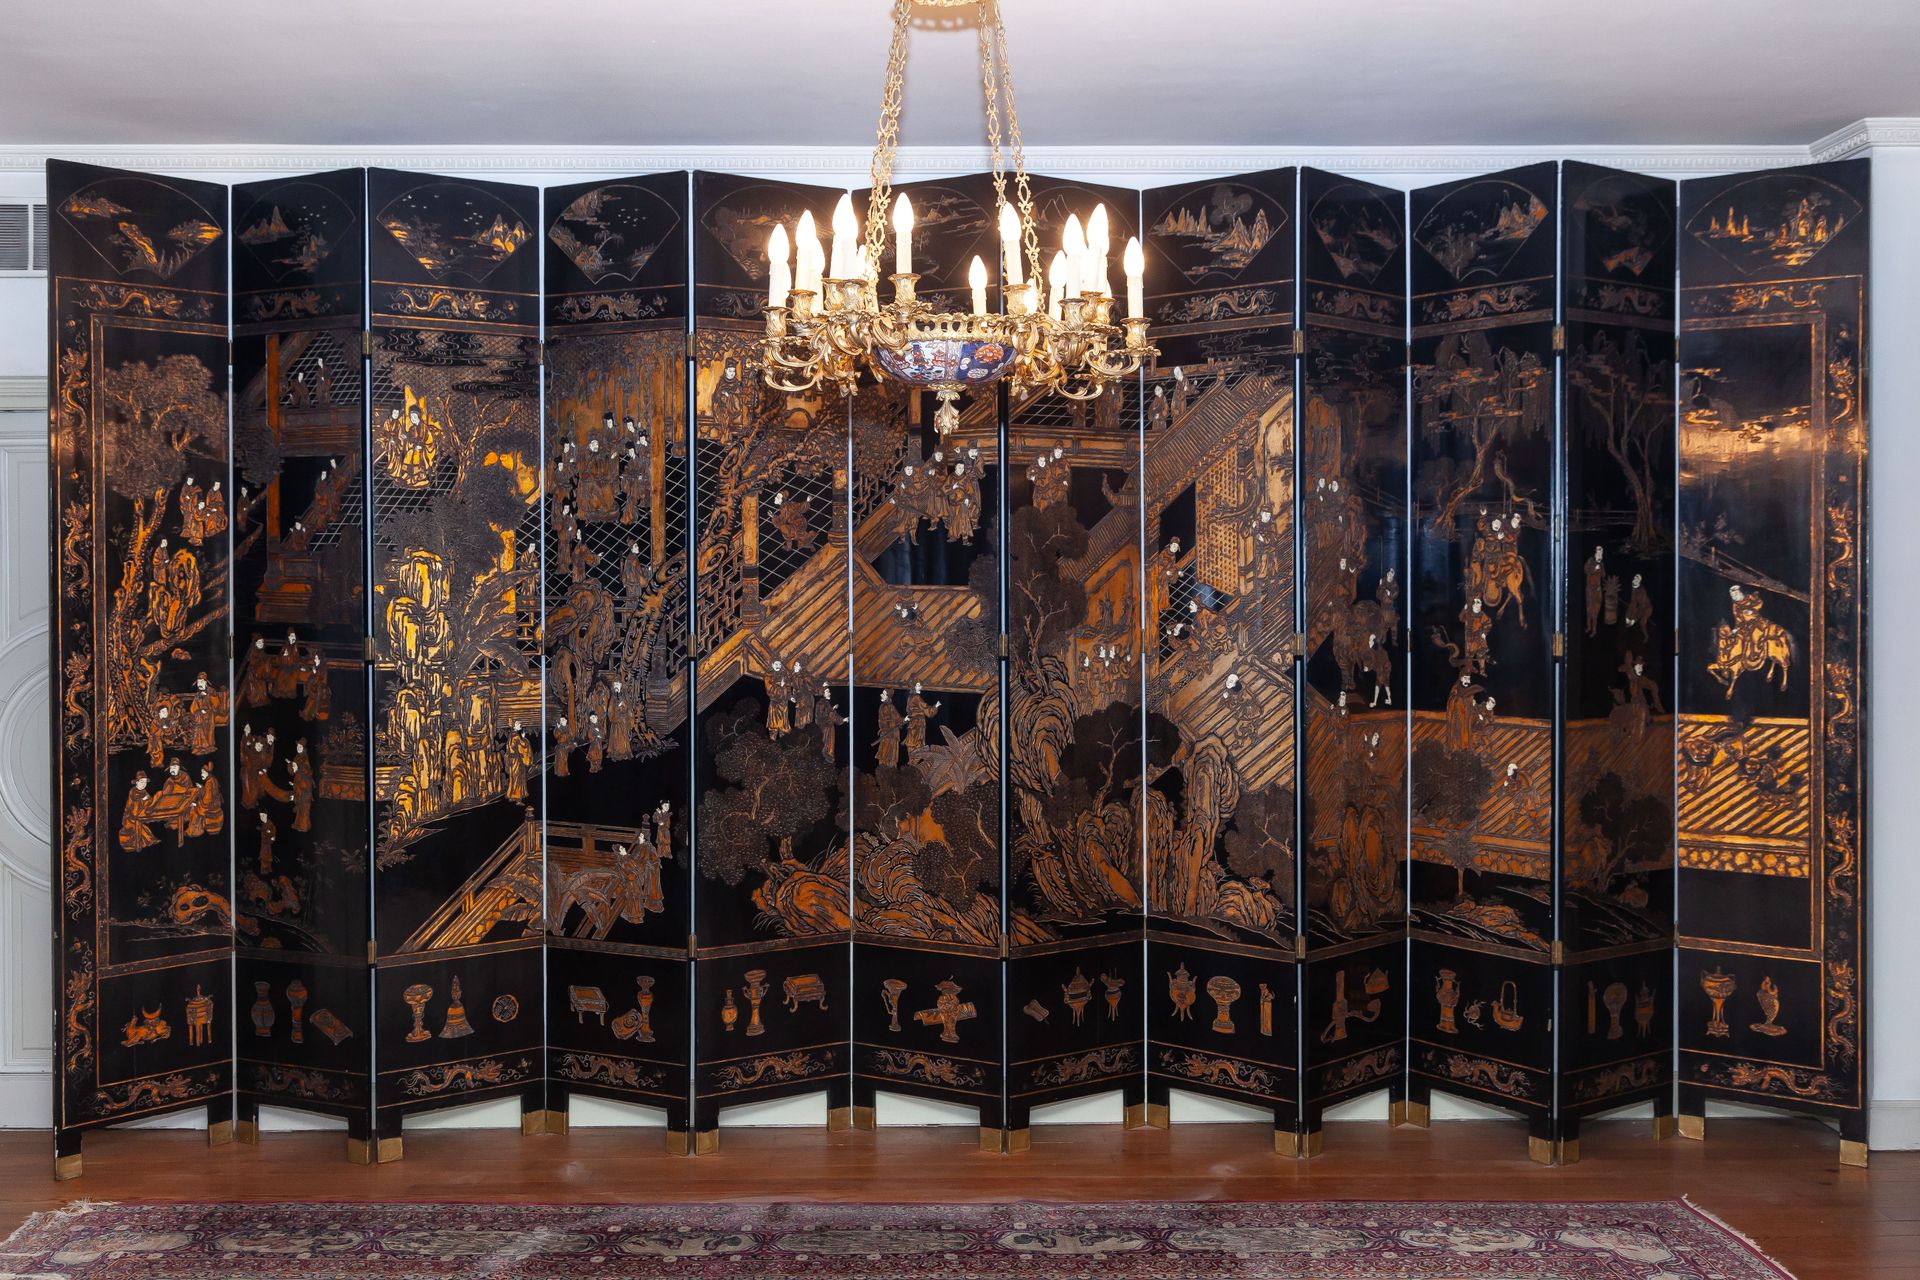 Null 12叶中国折叠屏风，黑漆和部分镀金，象牙镶嵌和宫廷场景装饰

每片叶子227 x 50厘米

2.000 - 3.000 €